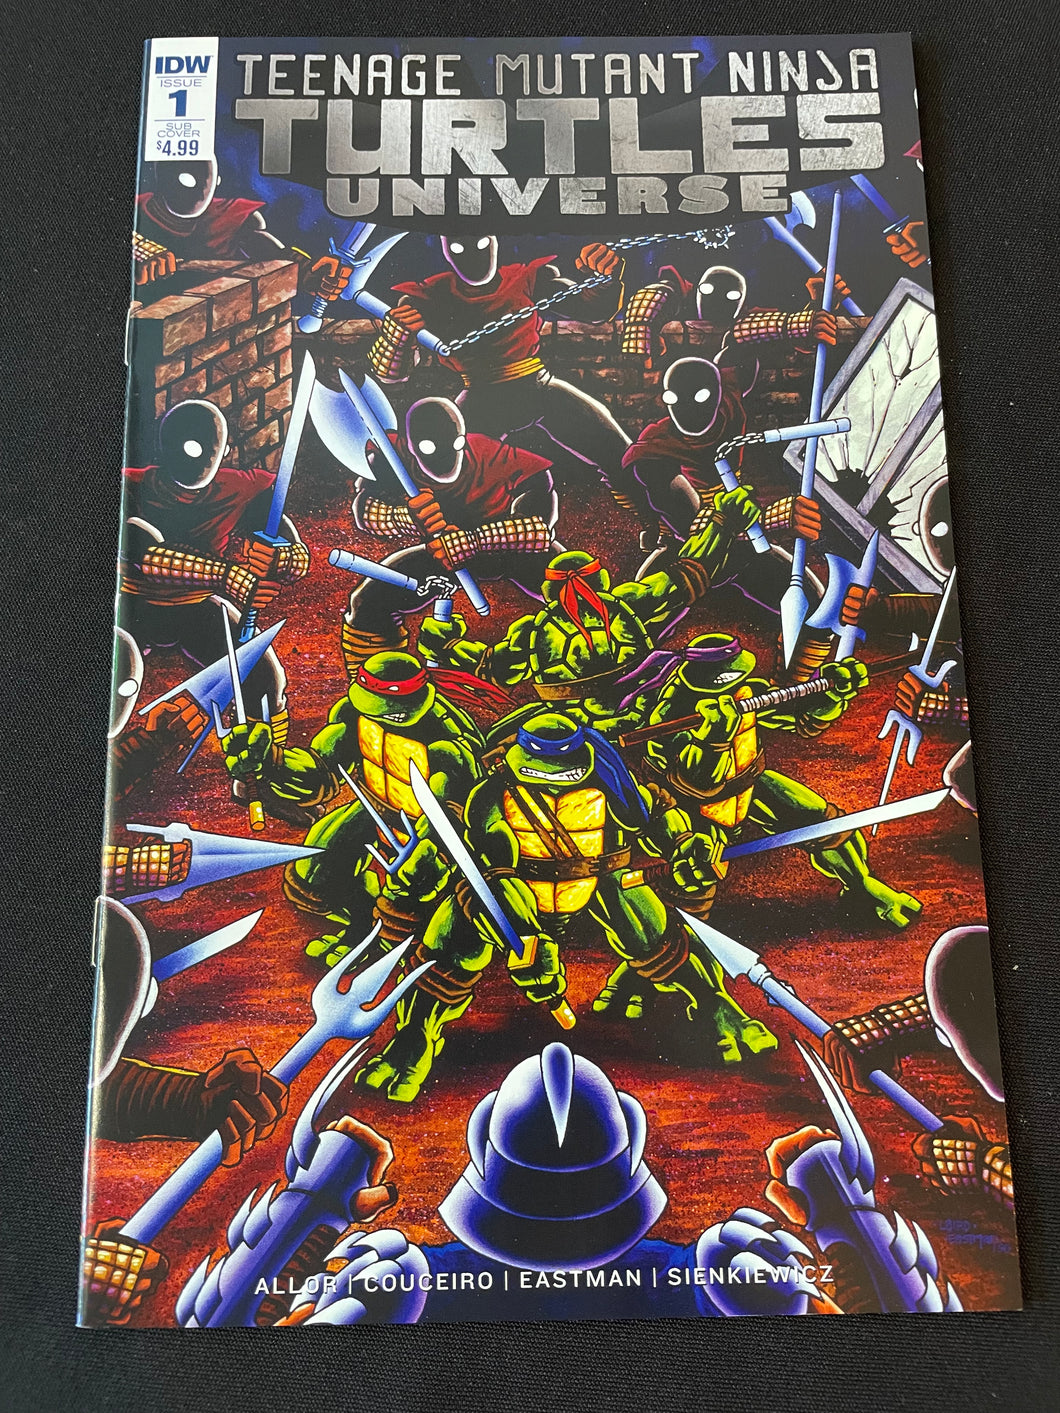 IDW TEENAGE MUTANT NINJA TURTLES UNIVERSE #1 COVER SUB VARIANT 1ST PRINT COMICS